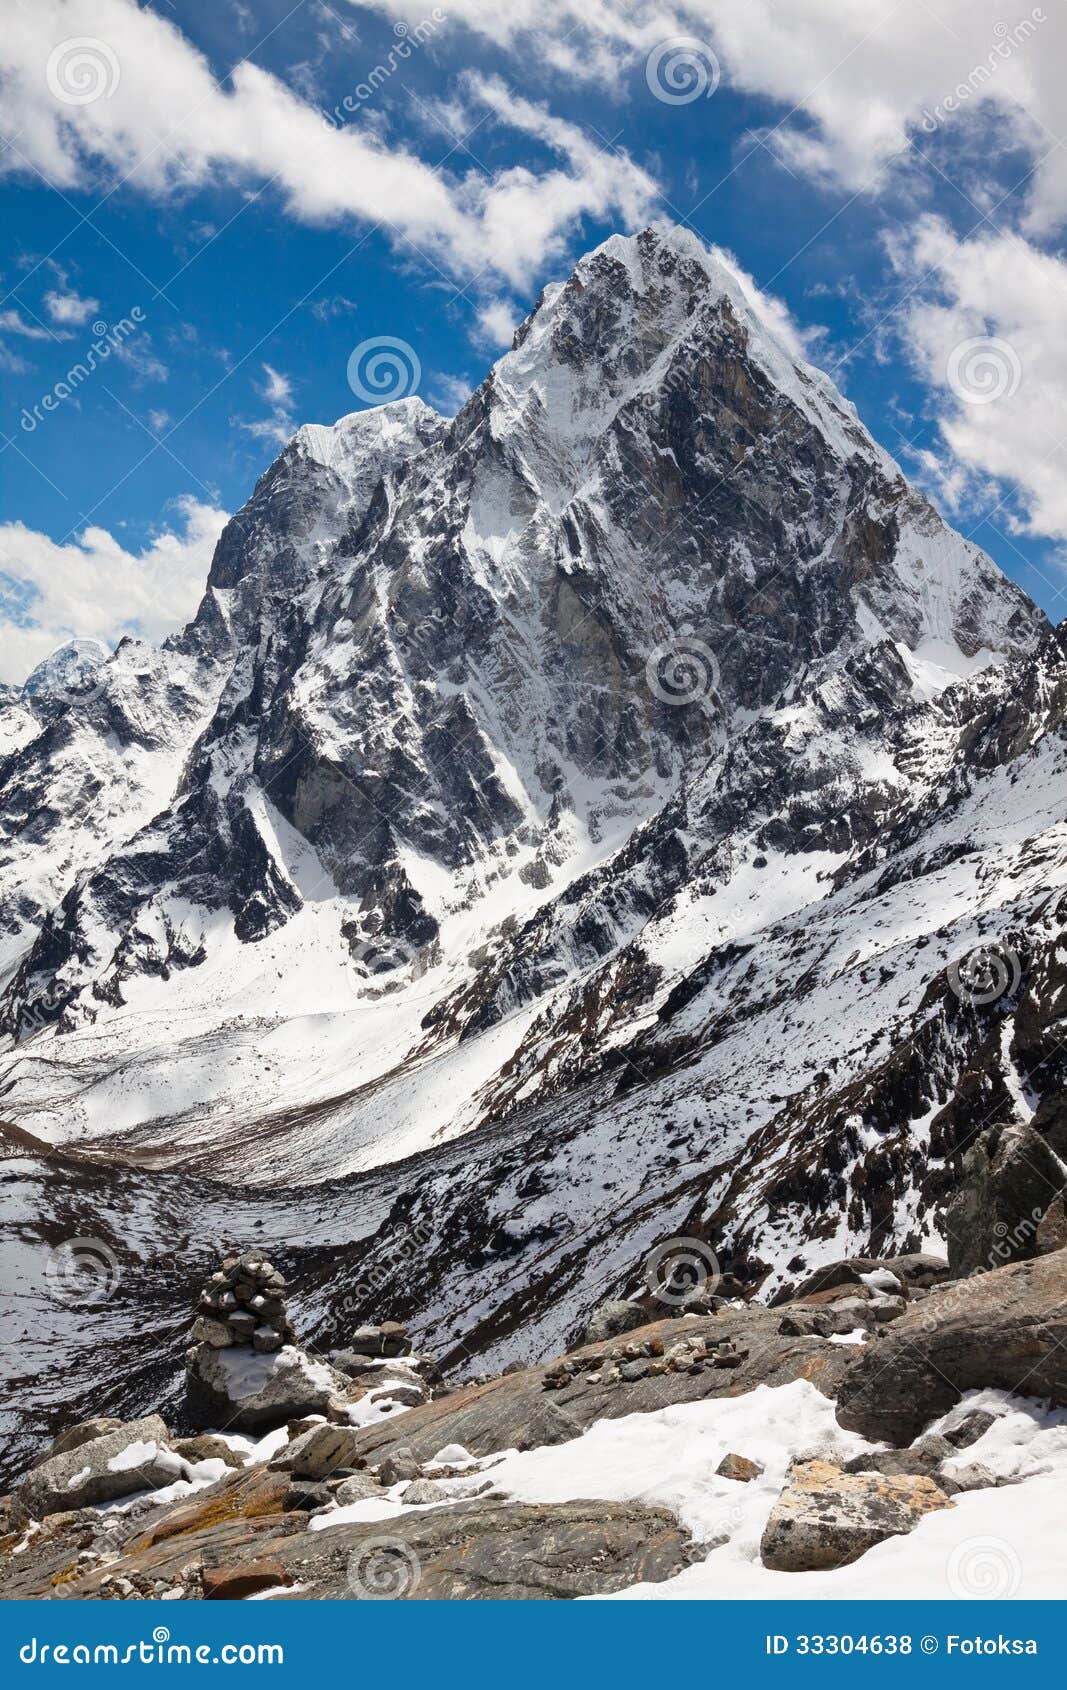 himalayan mountains cholatse and tabuche peak on a sunny day. ne